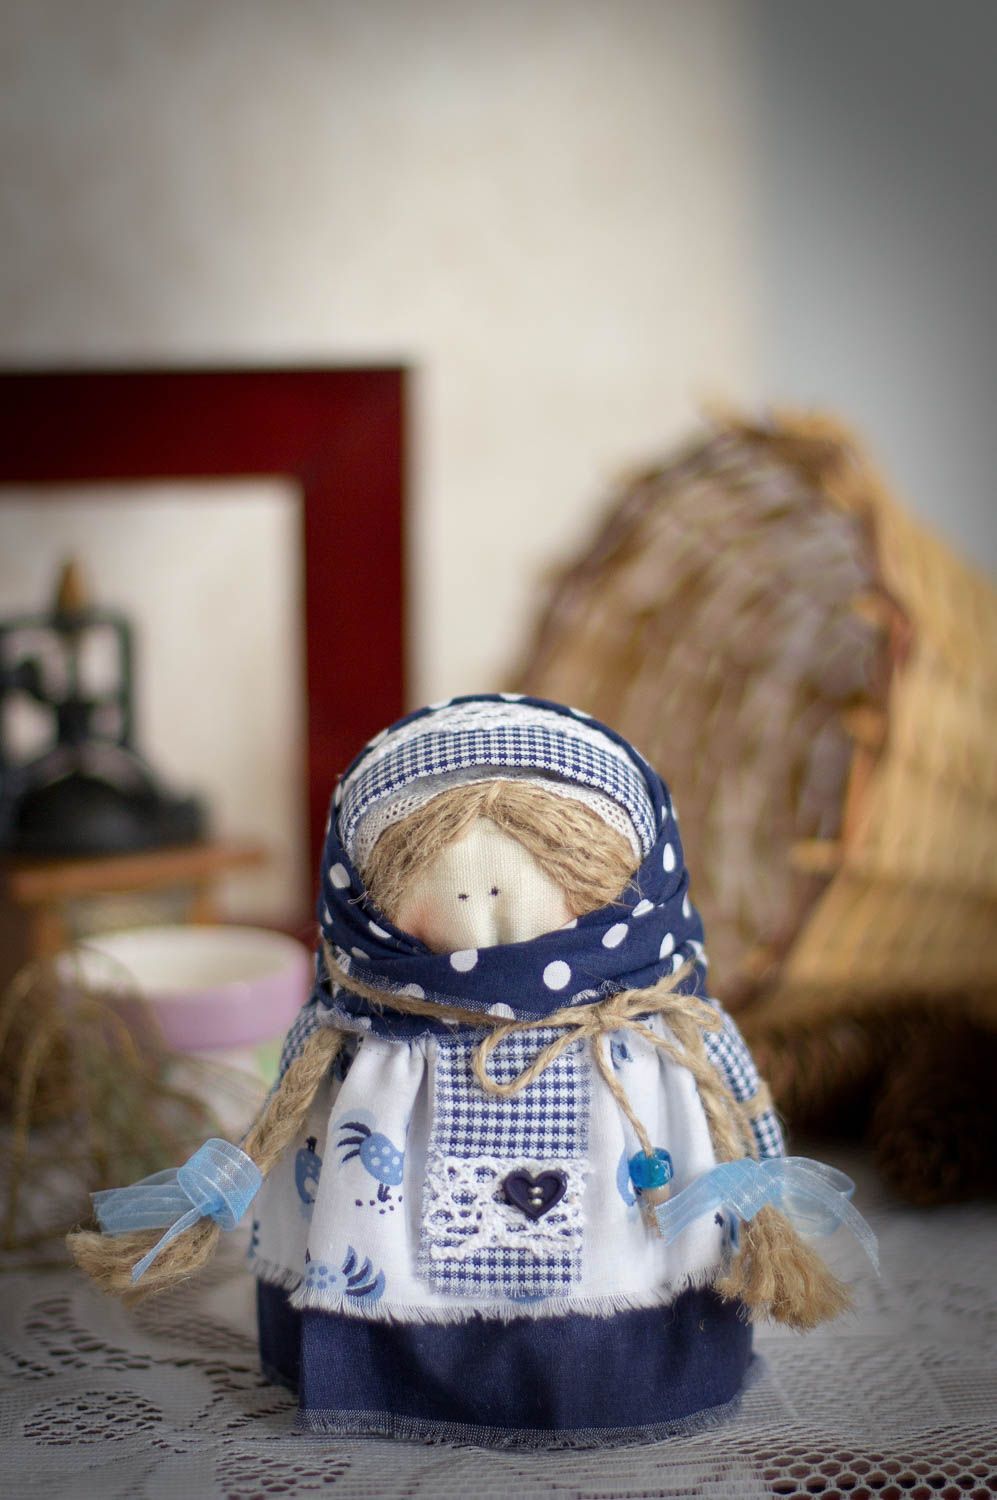 Игрушка кукла из ткани в платке для декора дома небольшая светлая ручной работы фото 1